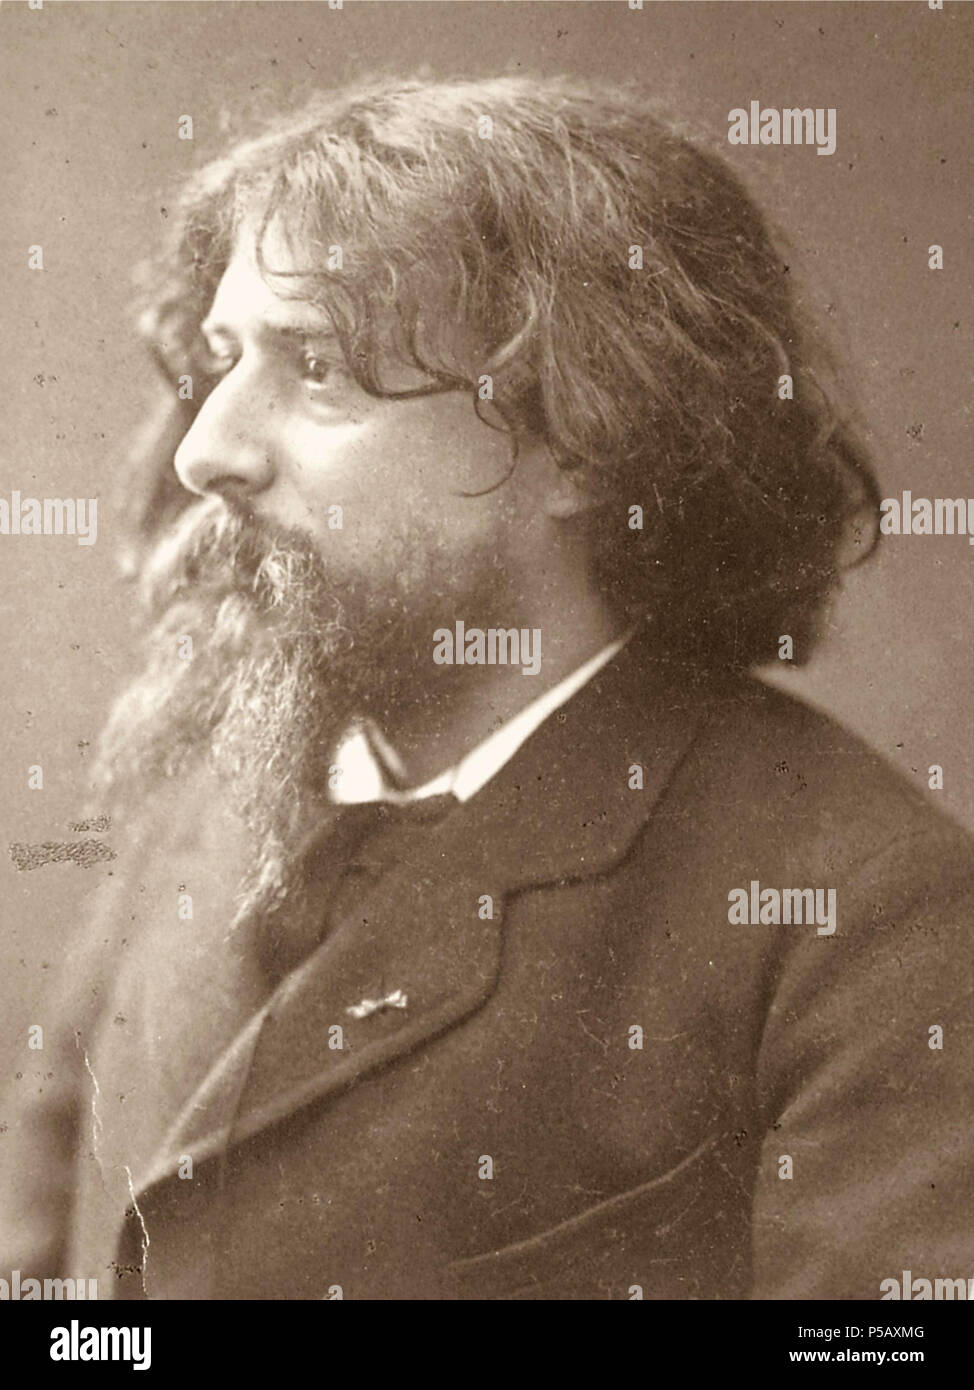 N/A. Deutsch: Alphonse Daudet 1840-1897 französischer Schriftsteller. 19th century. Nadar - Rue d´ Anjou, 51 Paris. 87 Alphonse Daudet. Stock Photo